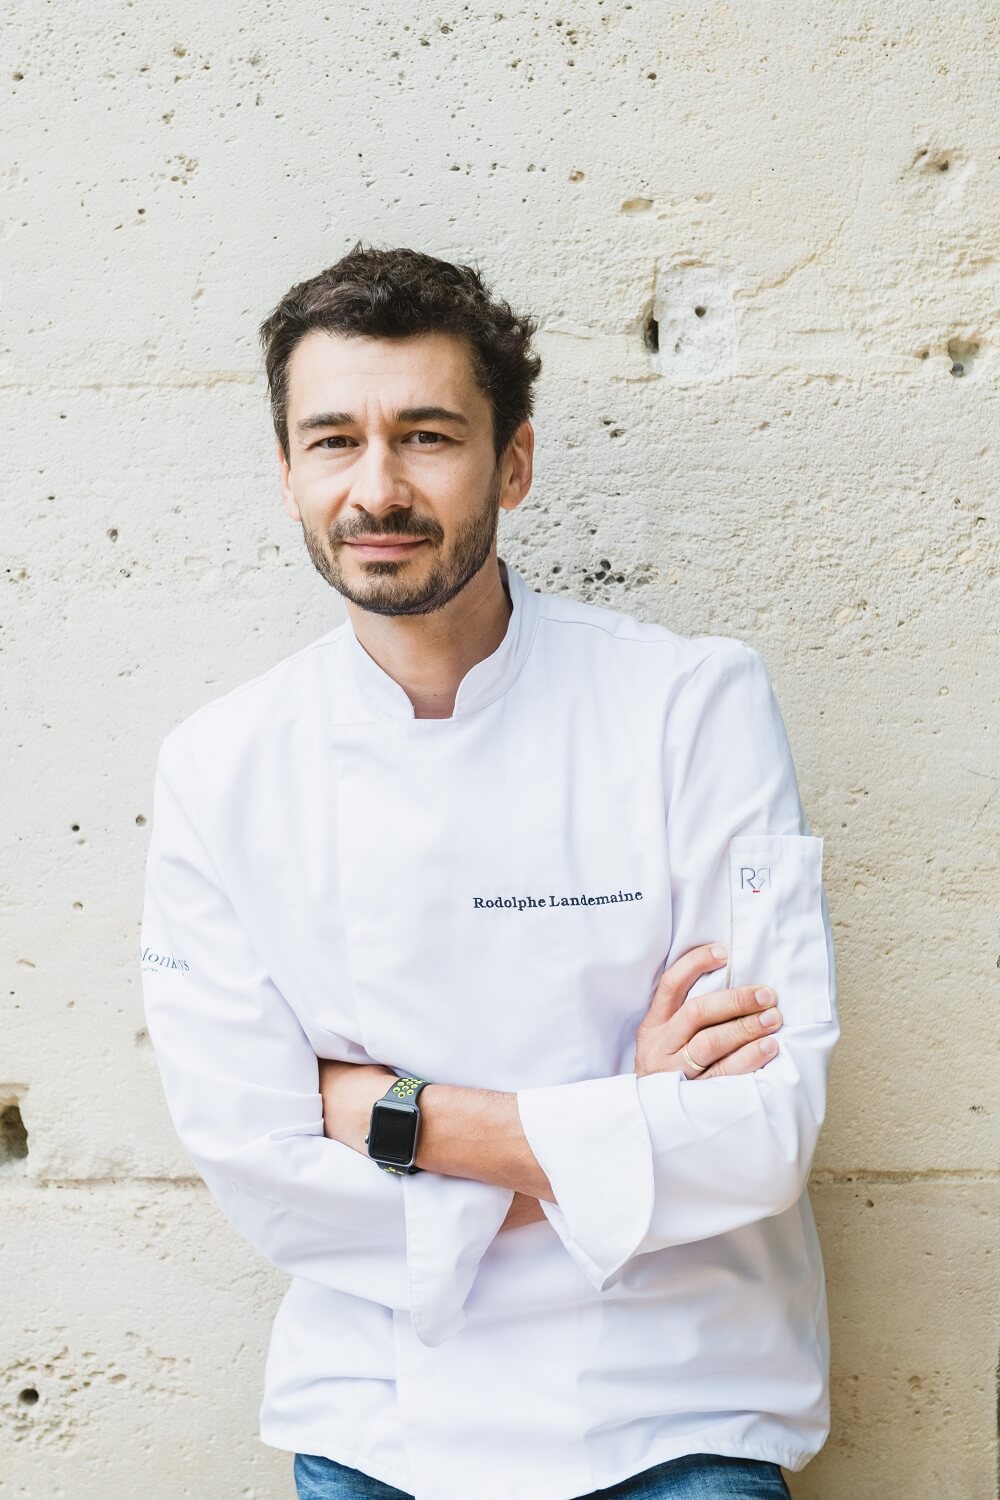 Rodolphe Landemaine, artisan boulanger